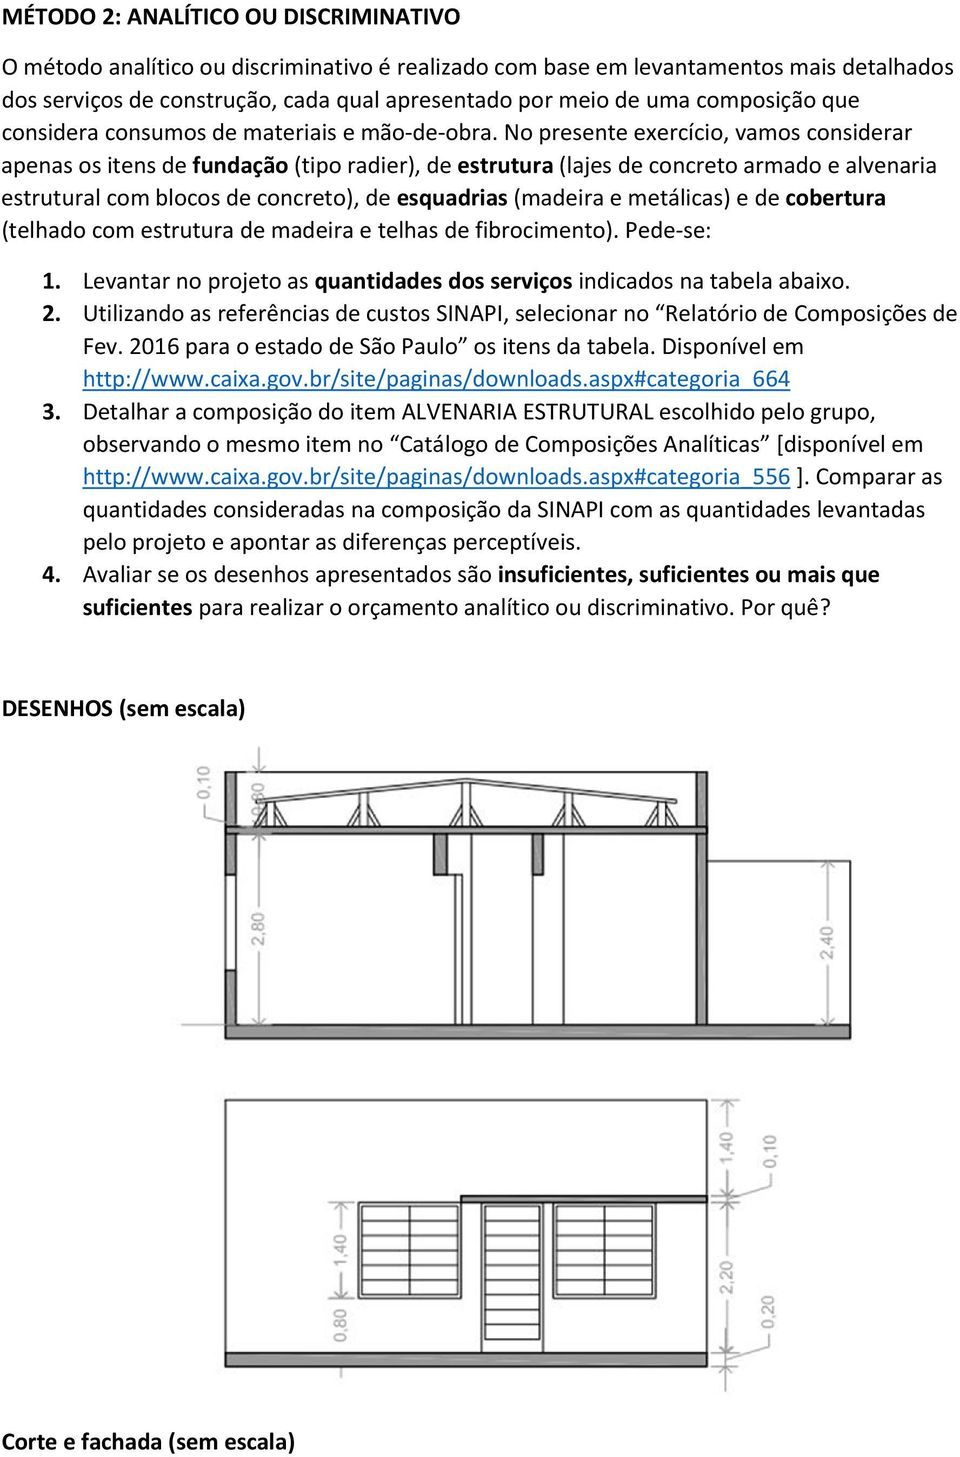 No presente exercício, vamos considerar apenas os itens de fundação (tipo radier), de estrutura (lajes de concreto armado e alvenaria estrutural com blocos de concreto), de esquadrias (madeira e